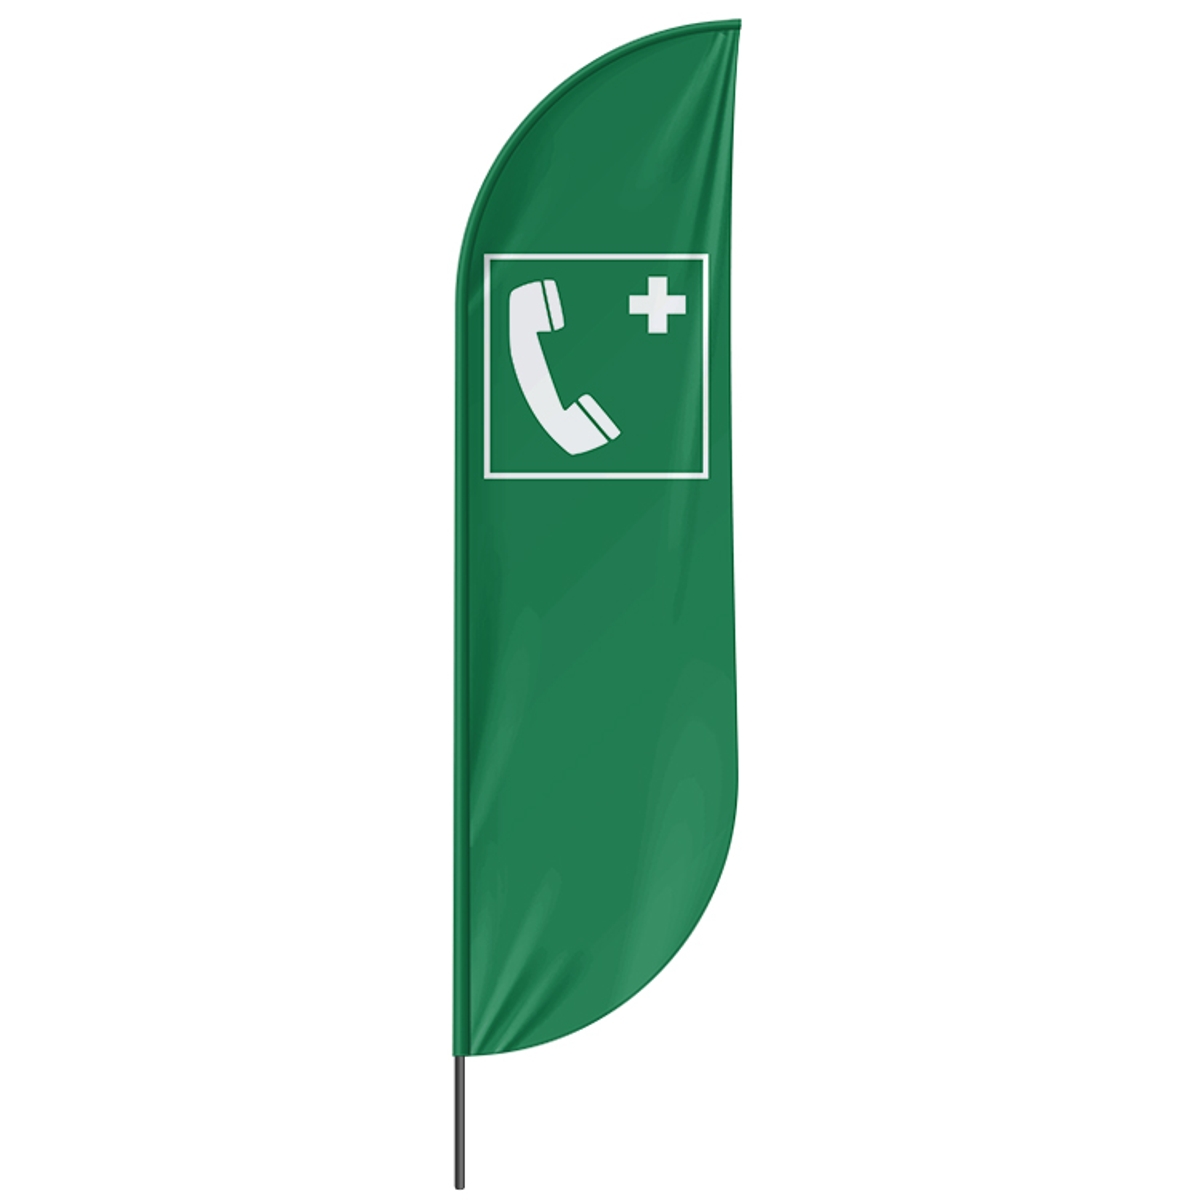 Beachflag Notfalltelefon - 3 Modelle - 4 Größen